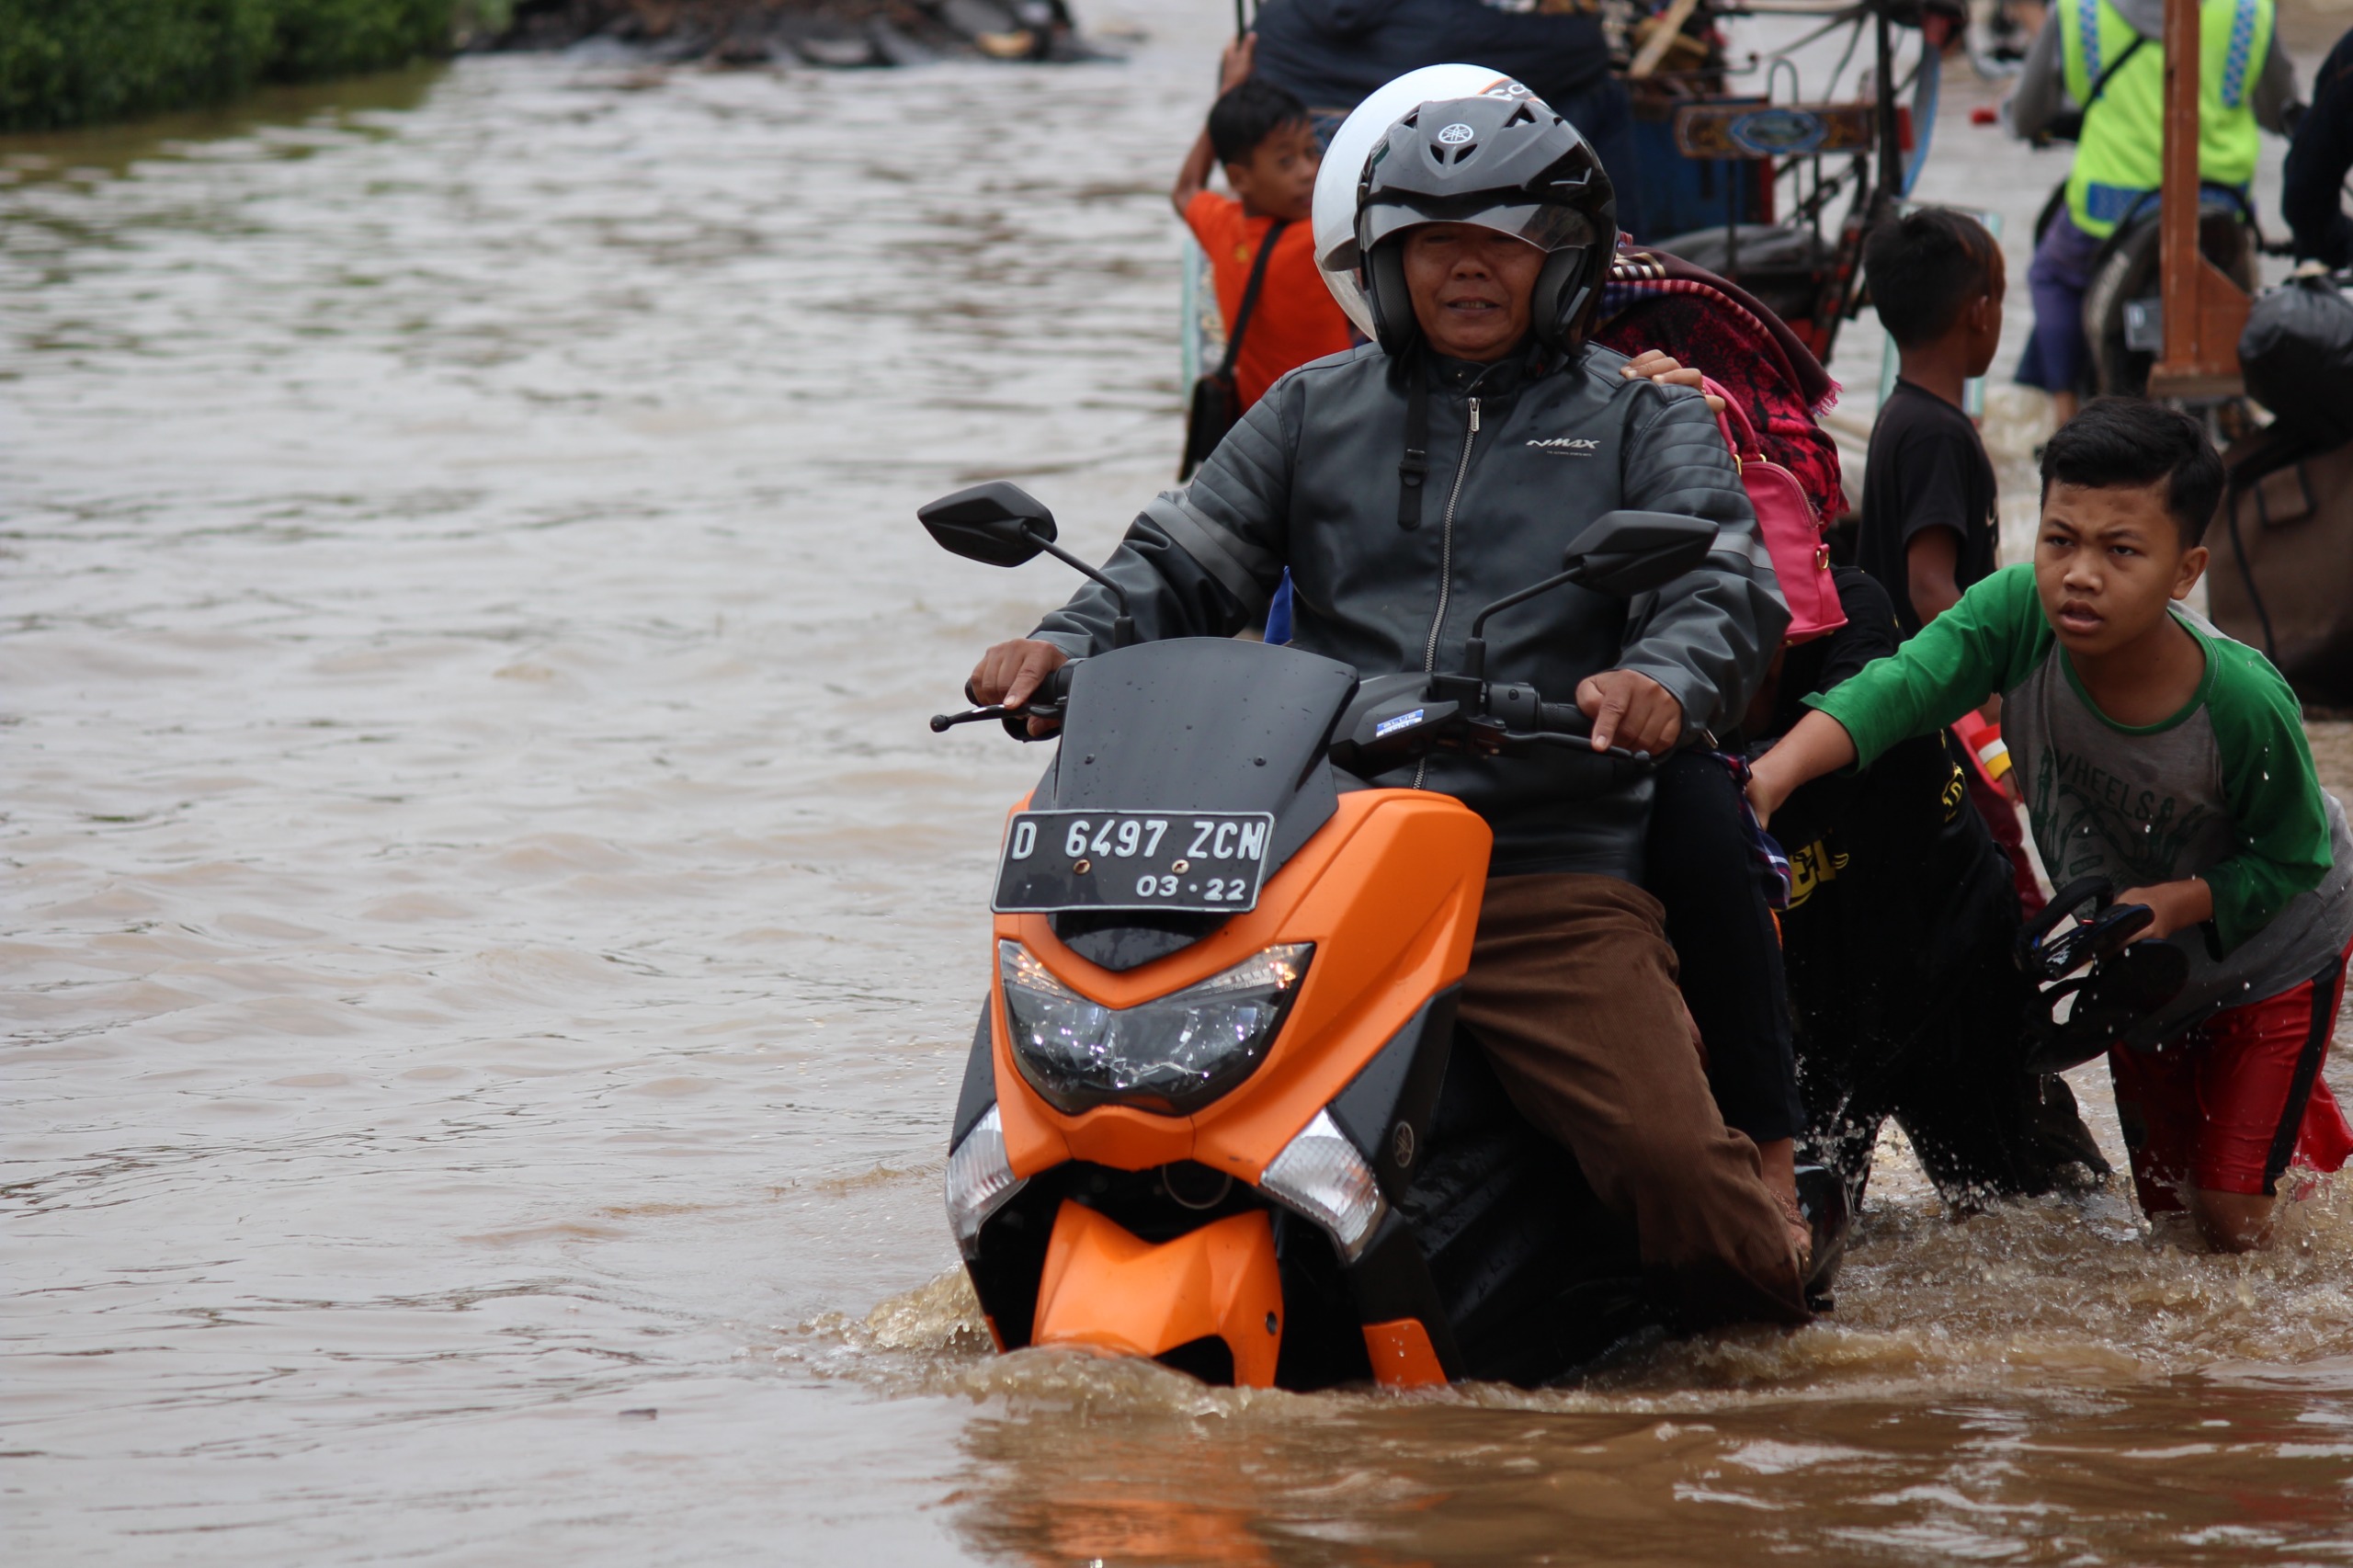 BUTUH PERHATIAN SERIUS: Seorang pengendara sepeda motor tampak macet di tengah jalan akibat terjebak banjir di wilayah Gedebage, Kota Bandung, beberapa hari lalu. (PANDU MUSLIM/JABAR EKSPRES)